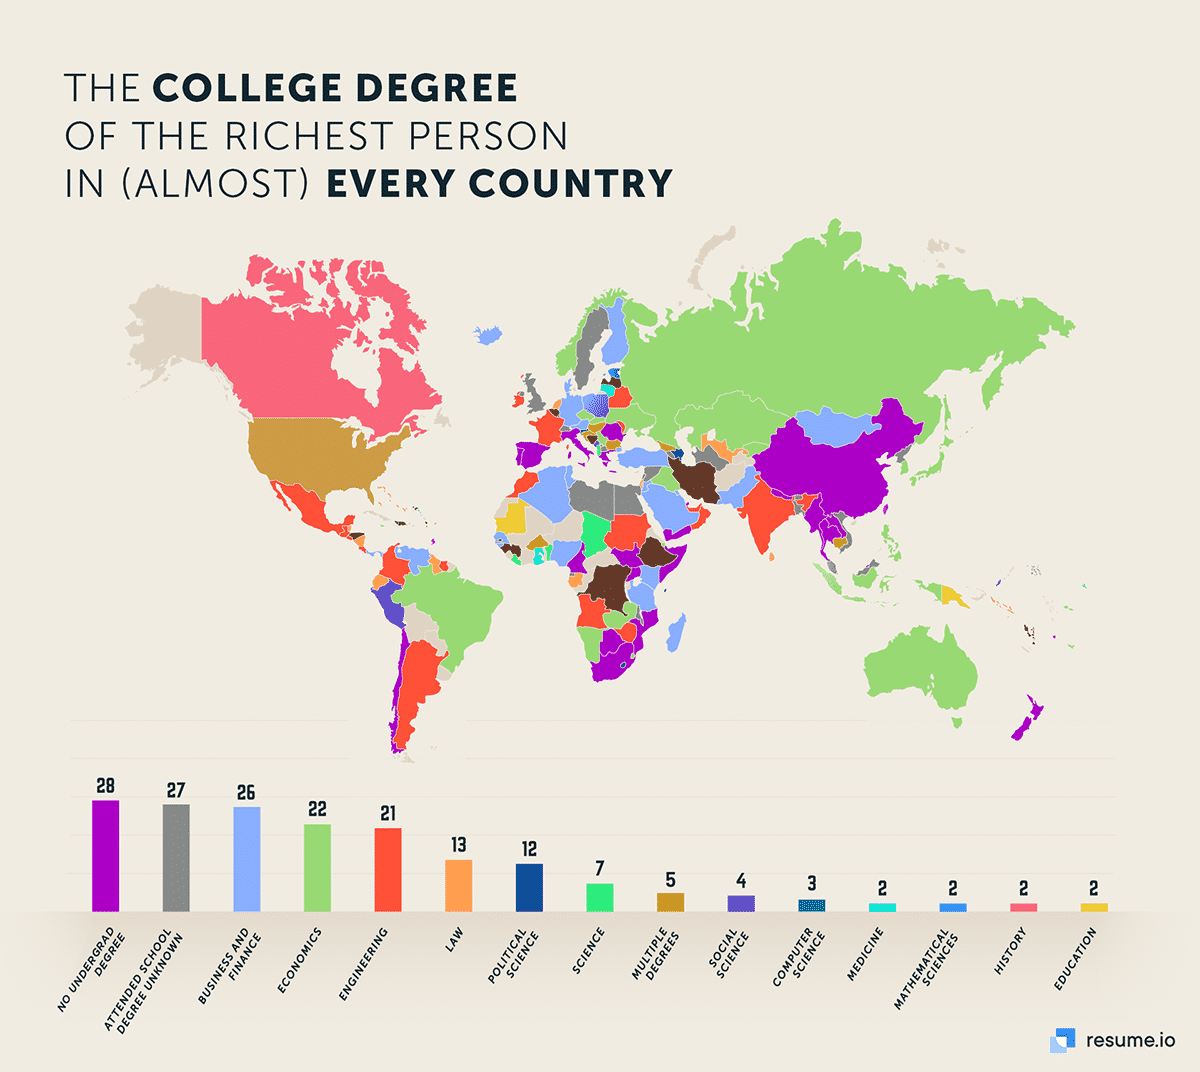 högskoleexamen för den rikaste personen i nästan alla länder